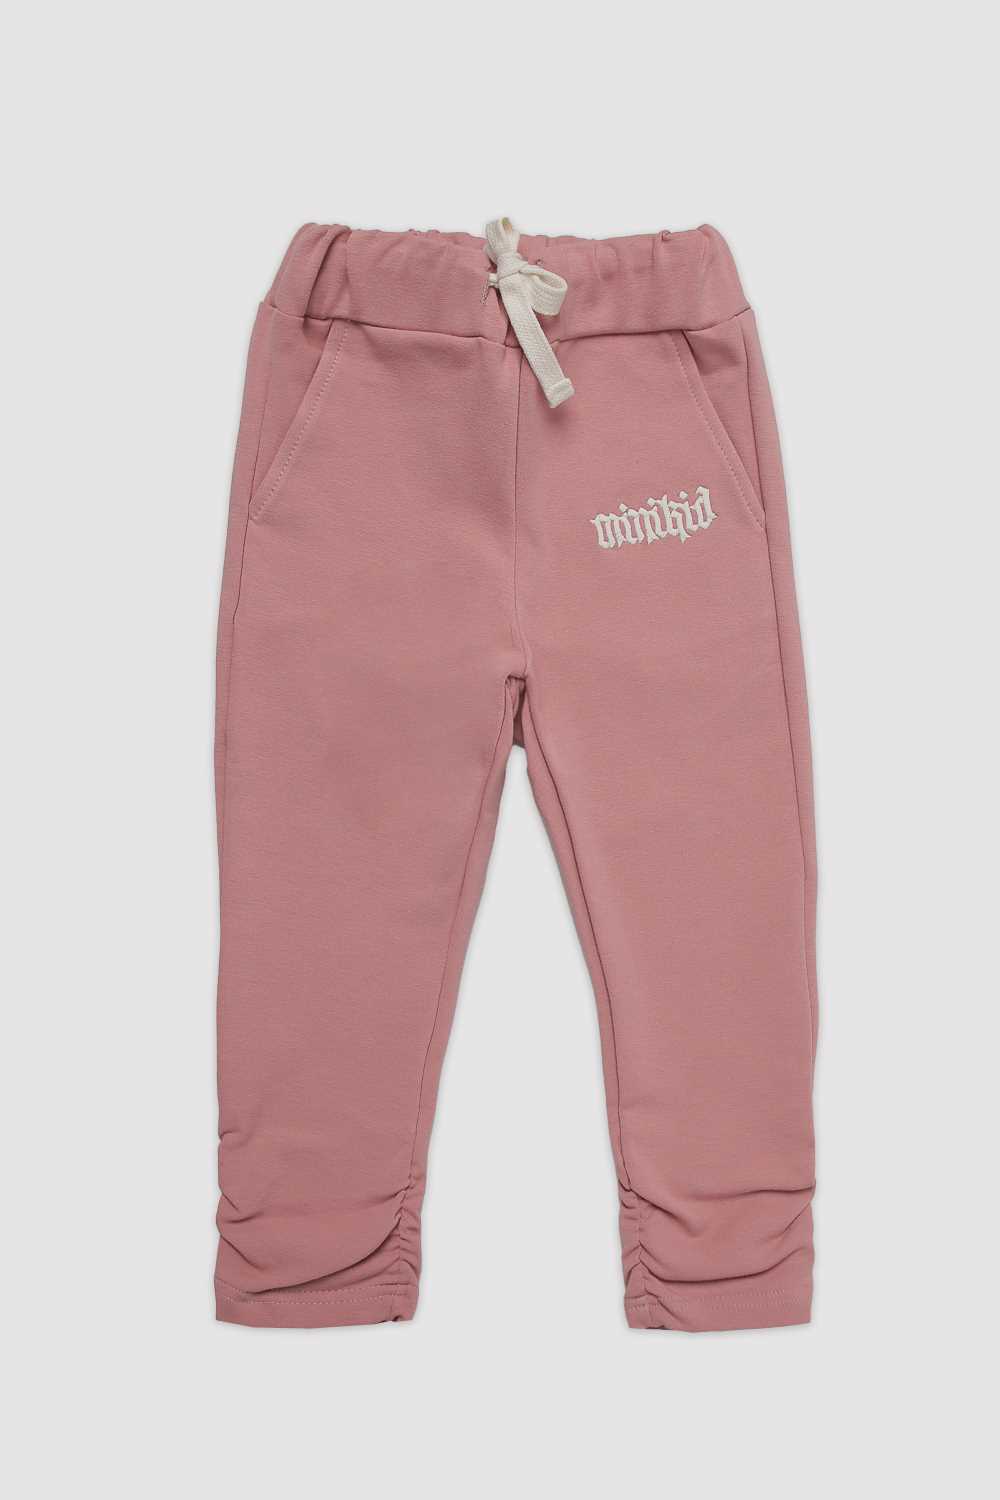 Spodnie Pink Pinched MINIKID Joggers